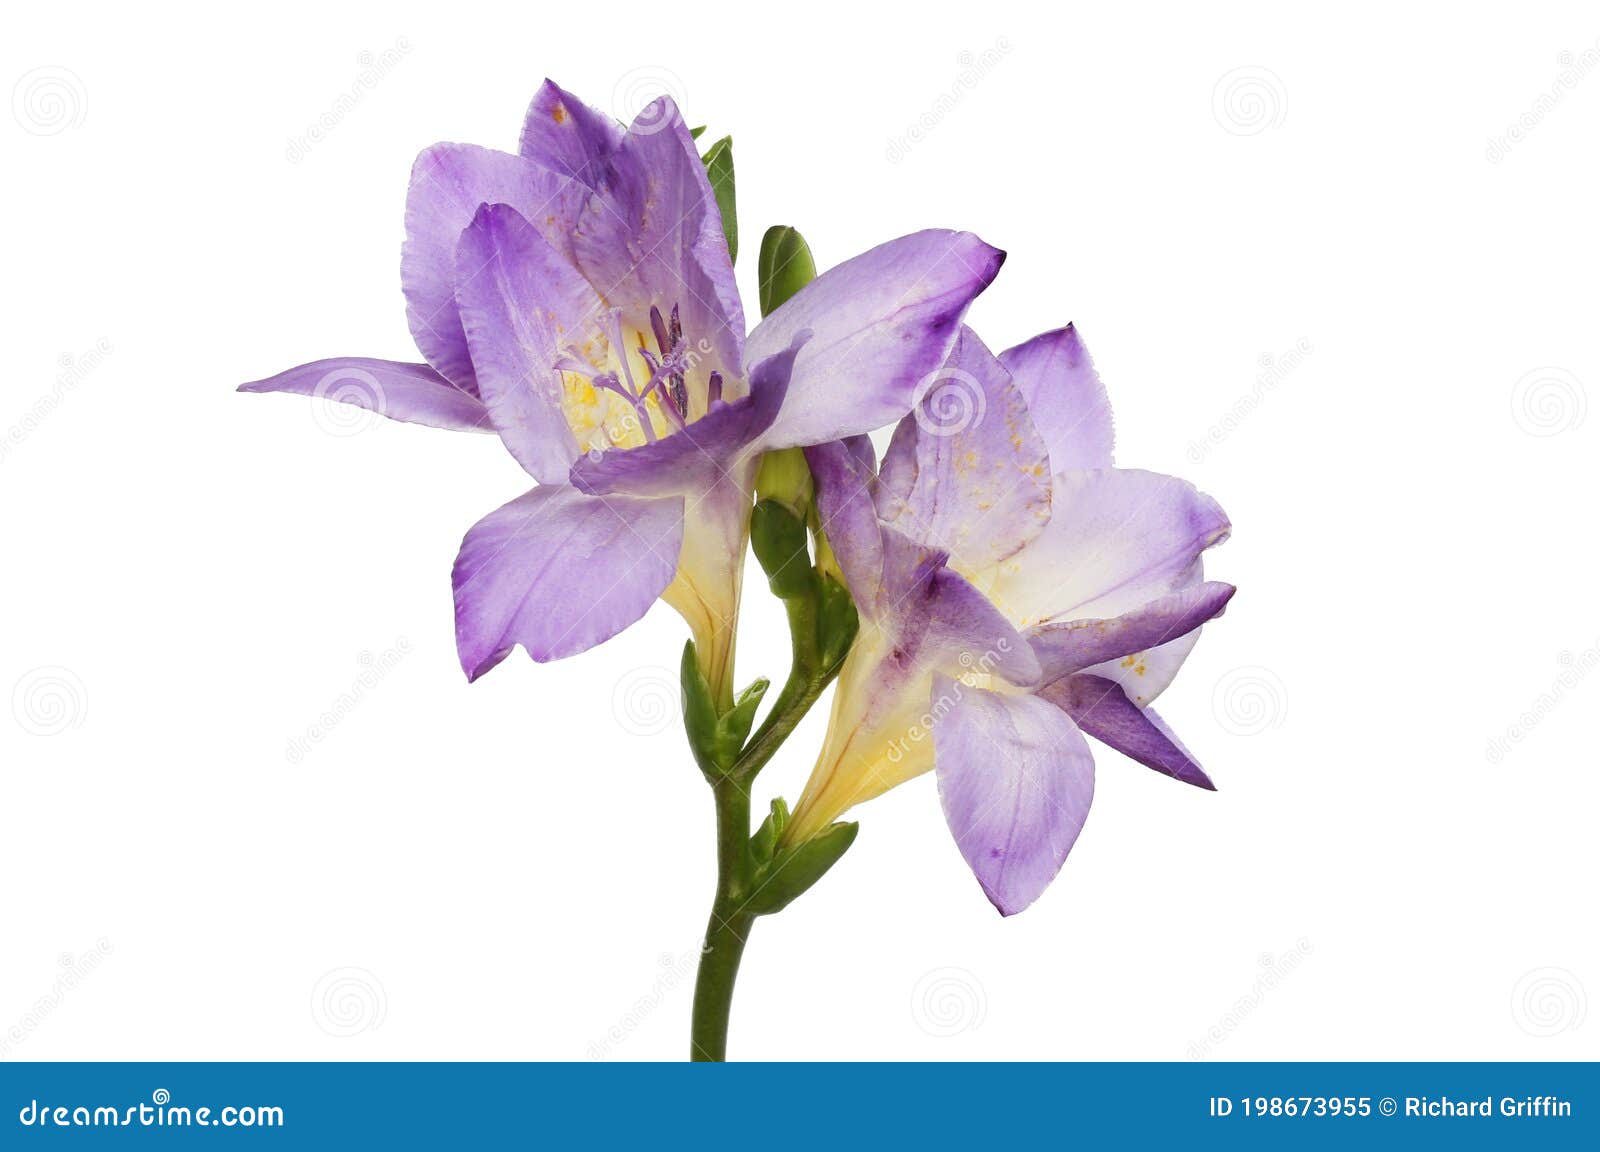 Flores azul fresia imagen de archivo. Imagen de antera - 198673955